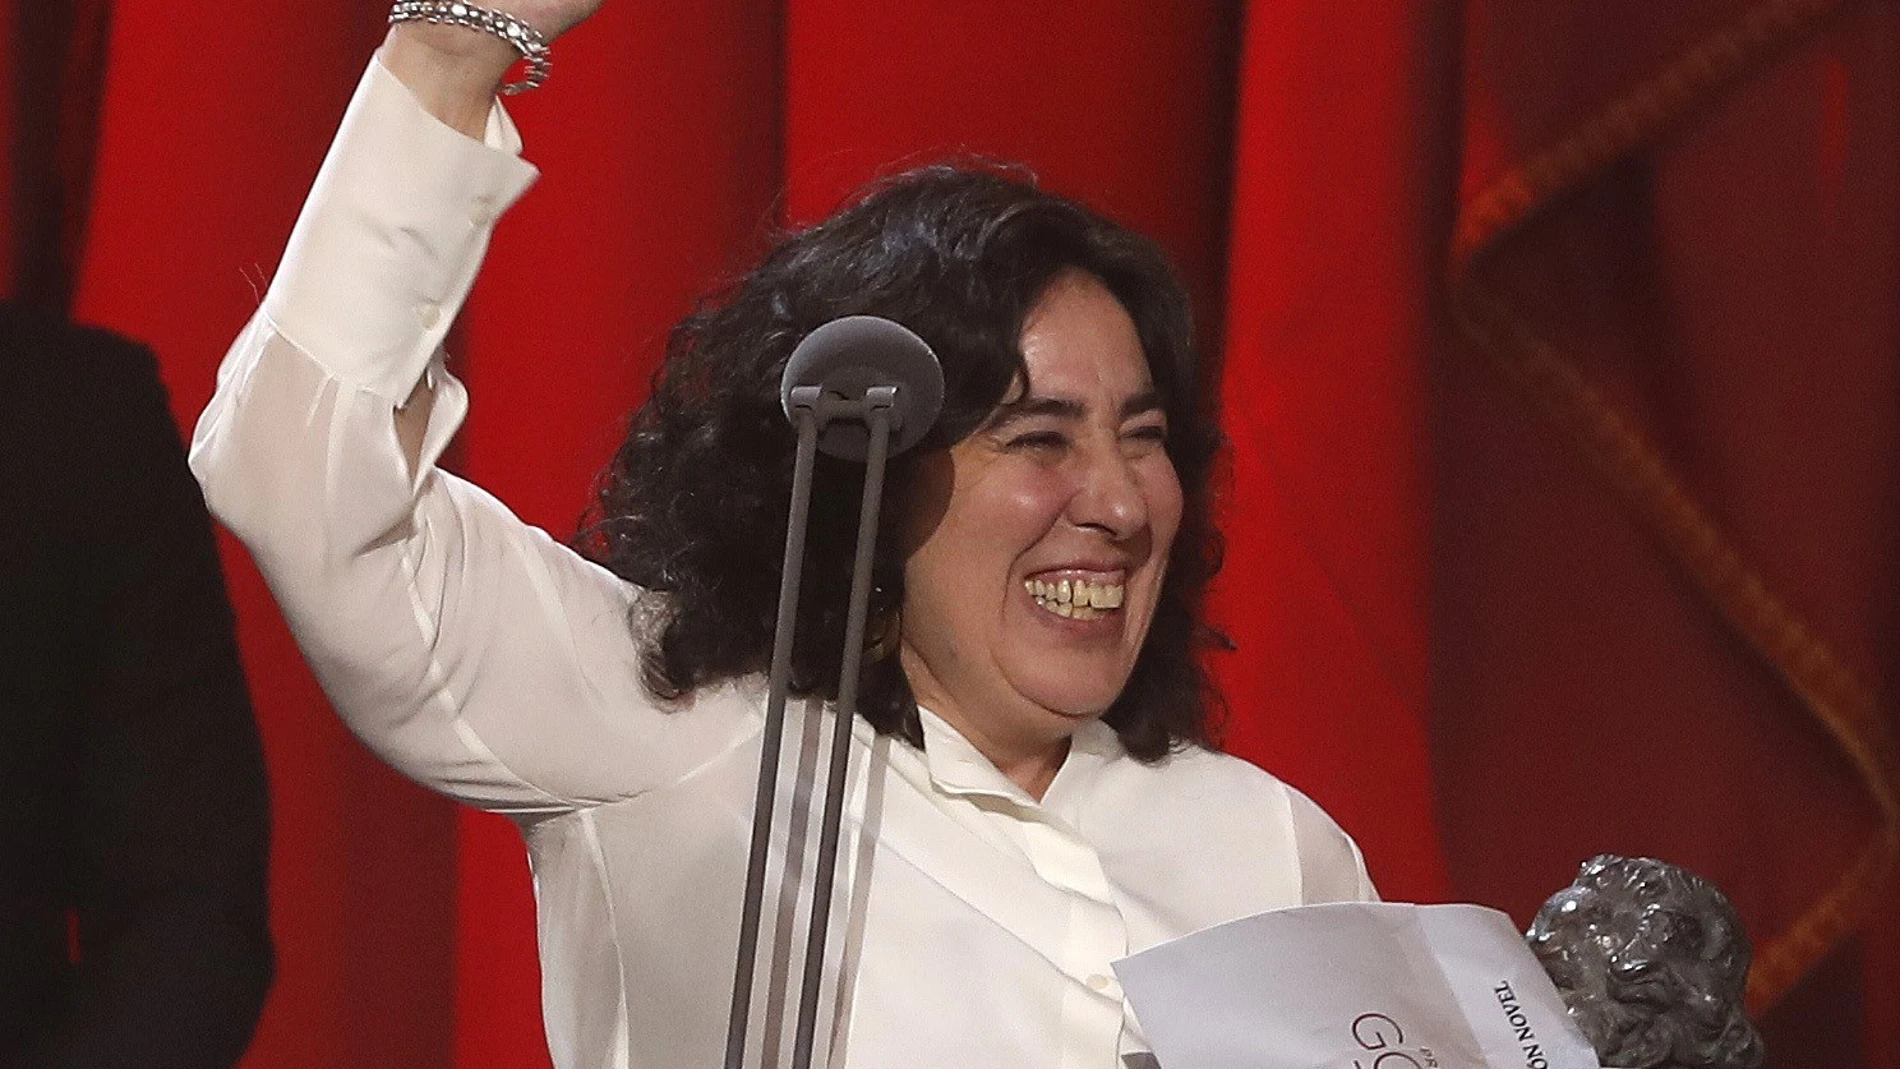 La realizadora Arantxa Echevarria tras recibir el premio a "Mejor dirección novel" por su película "Carmén y Lola"